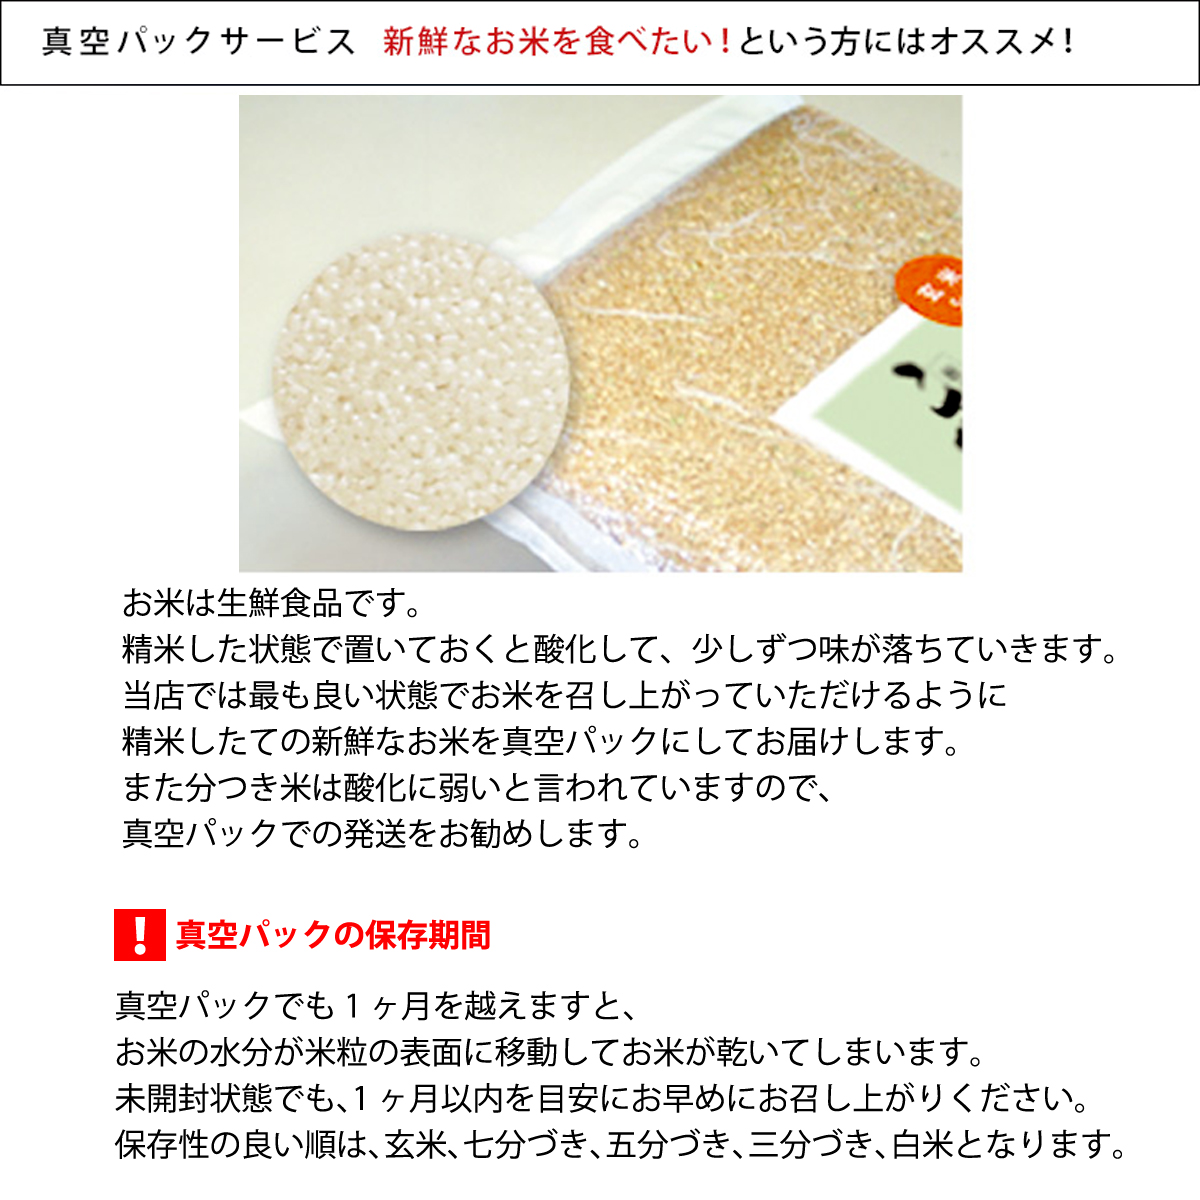 【先行予約】こしひかり 玄米時重量 5kg 分づき米 対応可 真空パック コシヒカリ 米 簡易梱包 エコ梱包【８月下旬以降順次お届け】